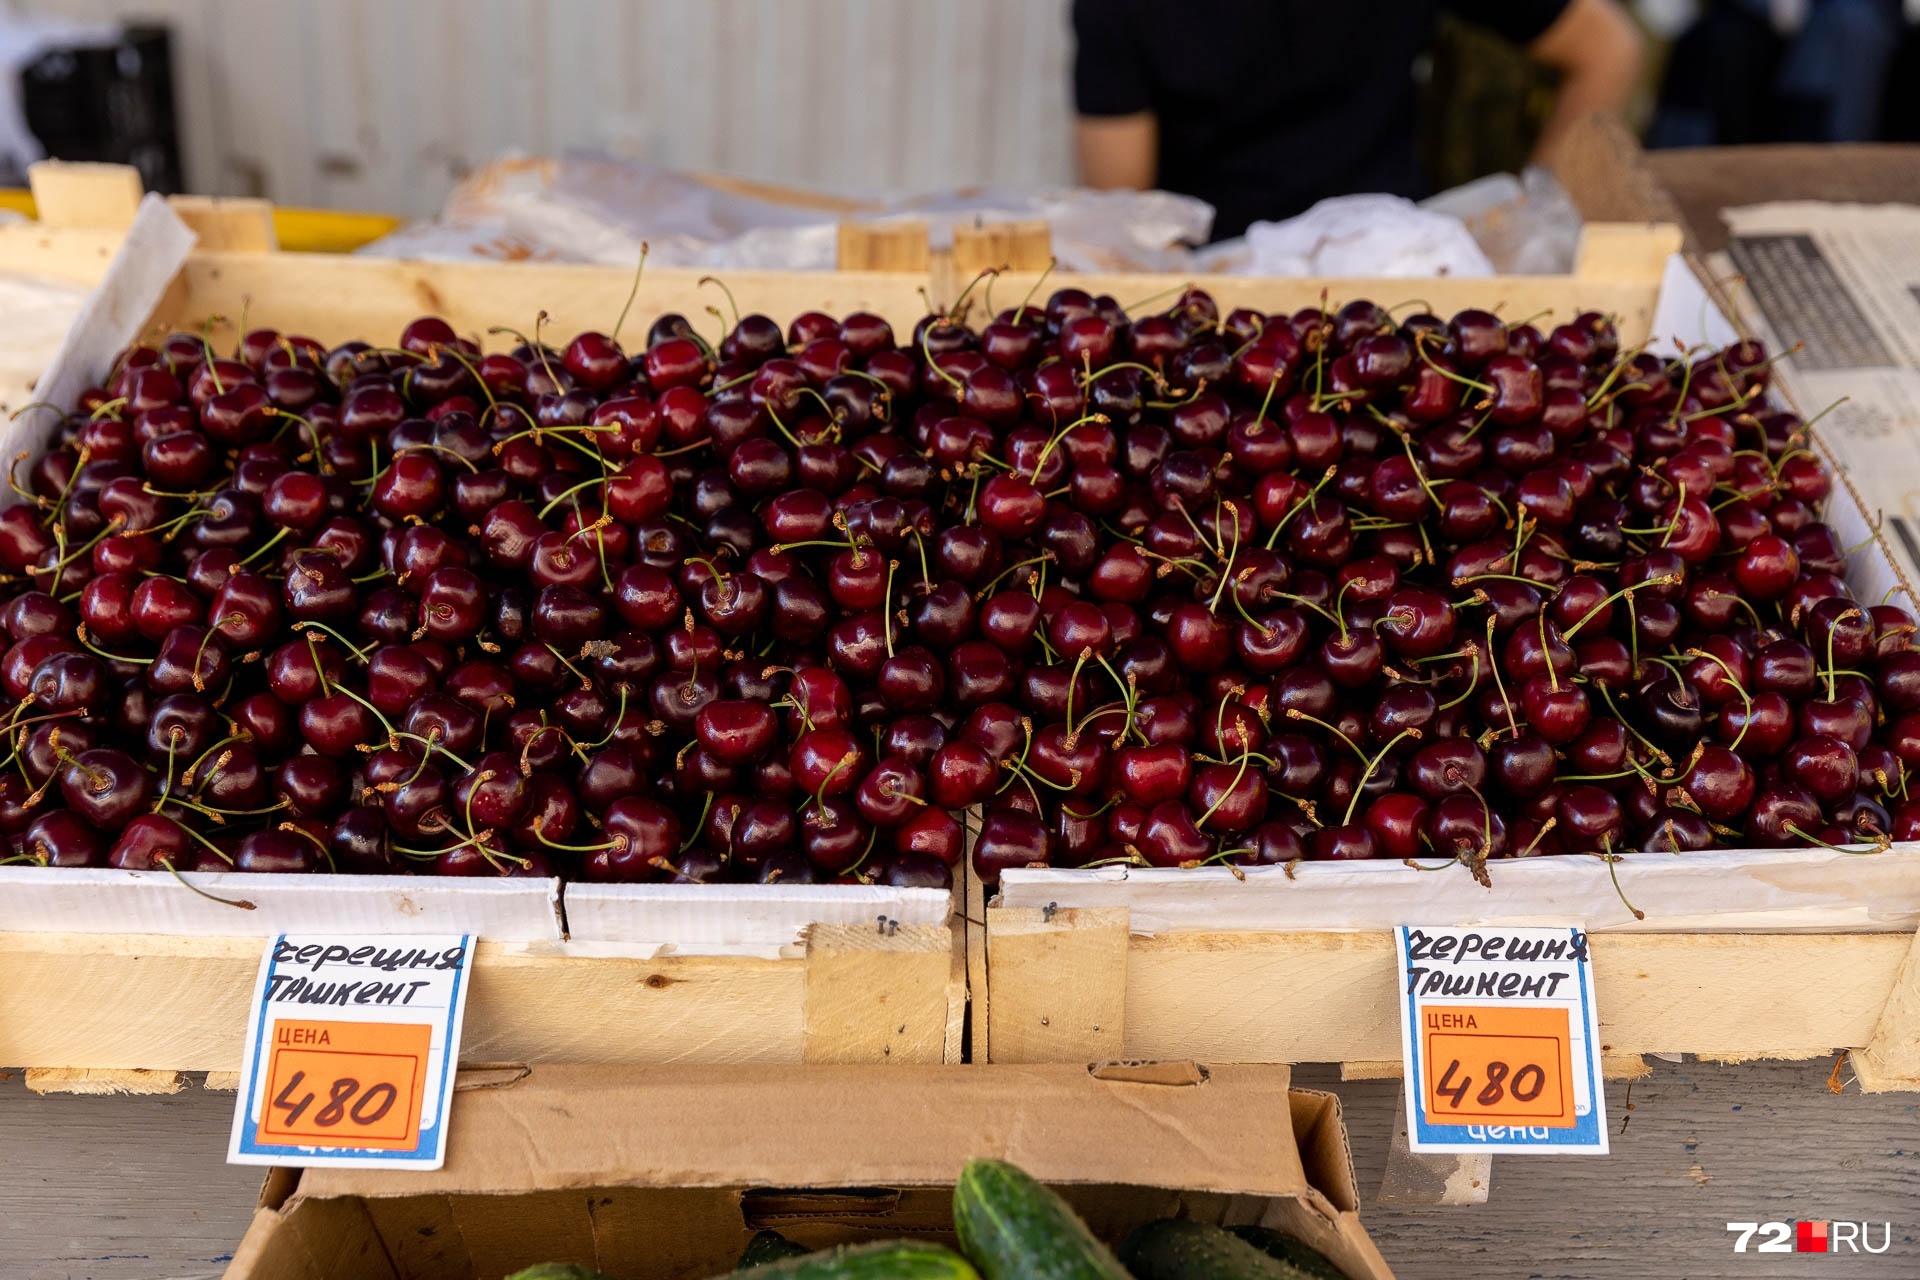 Черешню из жаркого Ташкента продают по 480 за килограмм. А вы уже ели эту ягоду в этом году? Расскажите нам в комментариях